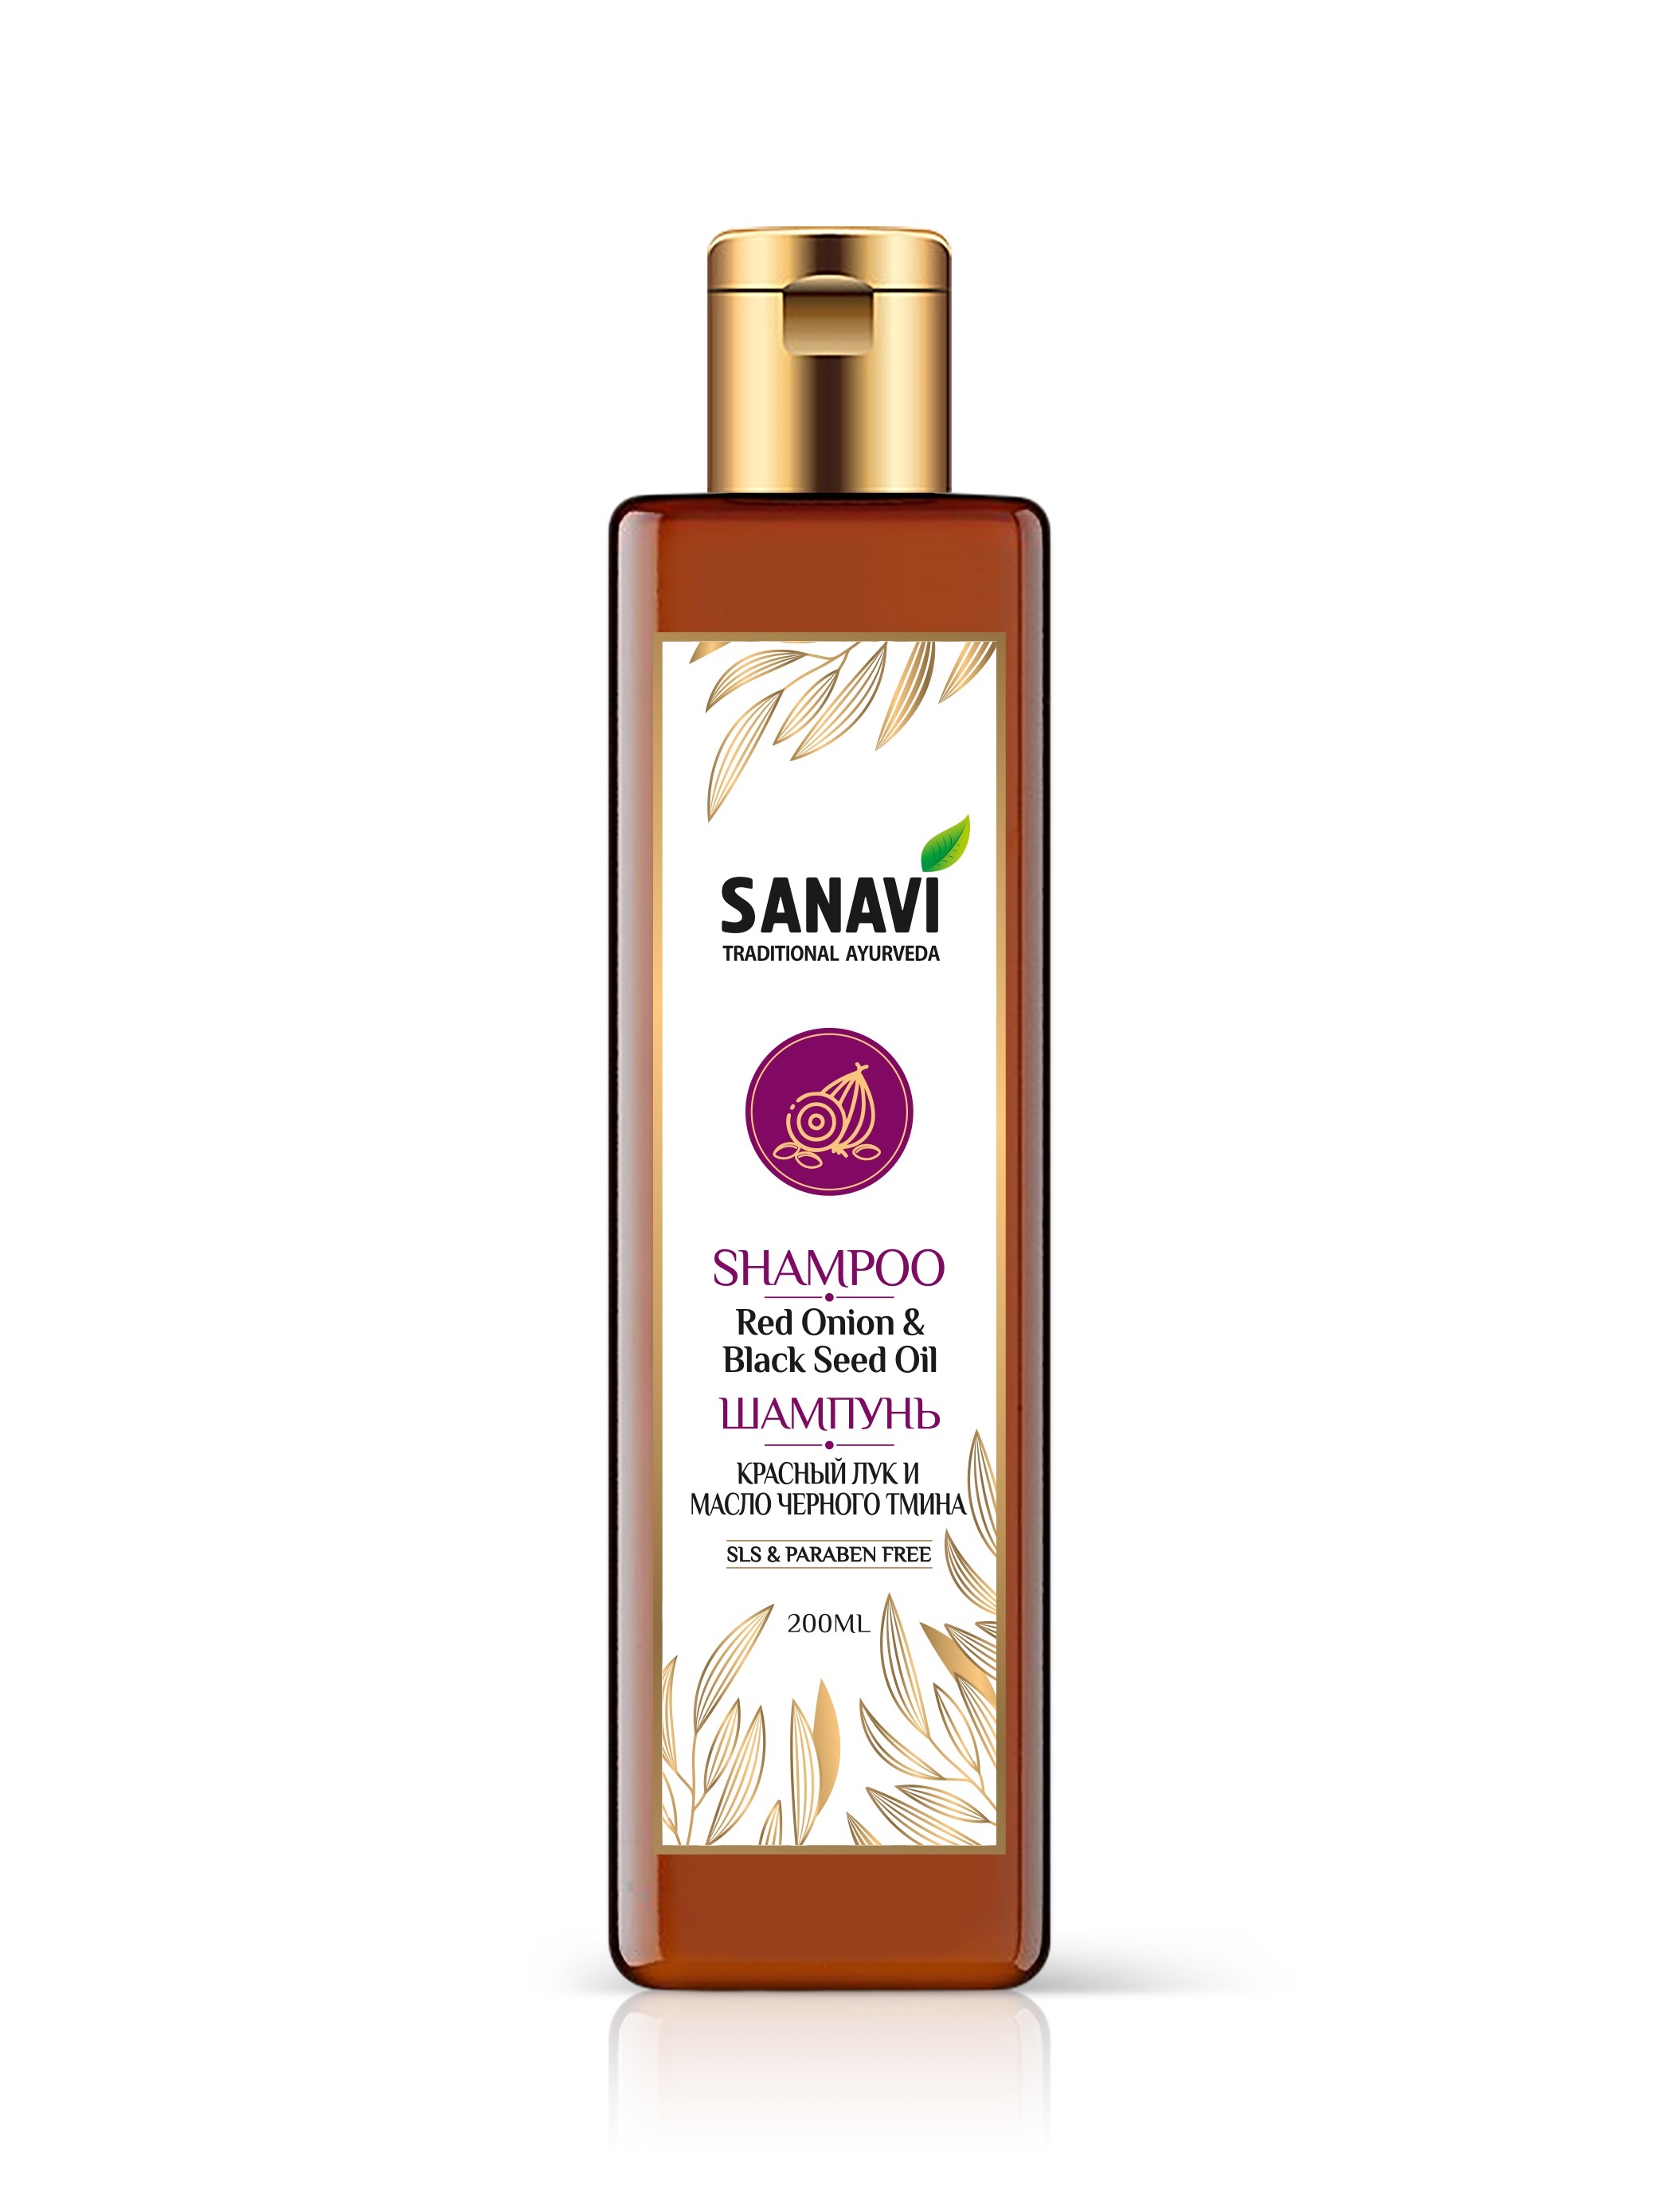 SHAMPOO Red Onion & Black Seed Oil, SLS & PARABEN FREE, Sanavi (ШАМПУНЬ для здоровья и блеска волос, КРАСНЫЙ ЛУК И МАСЛО ЧЕРНОГО ТМИНА, Санави), 200 мл.